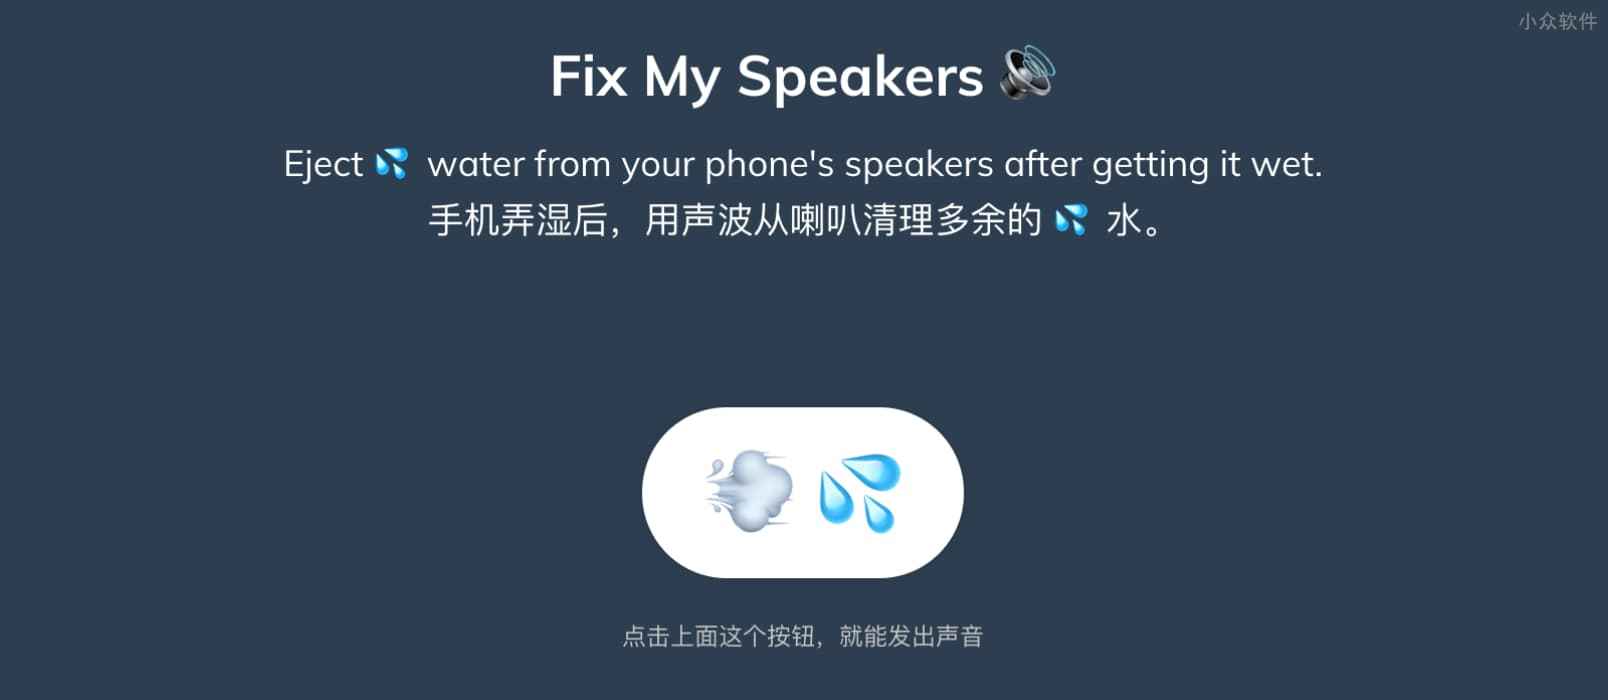 Fix My Speakers 